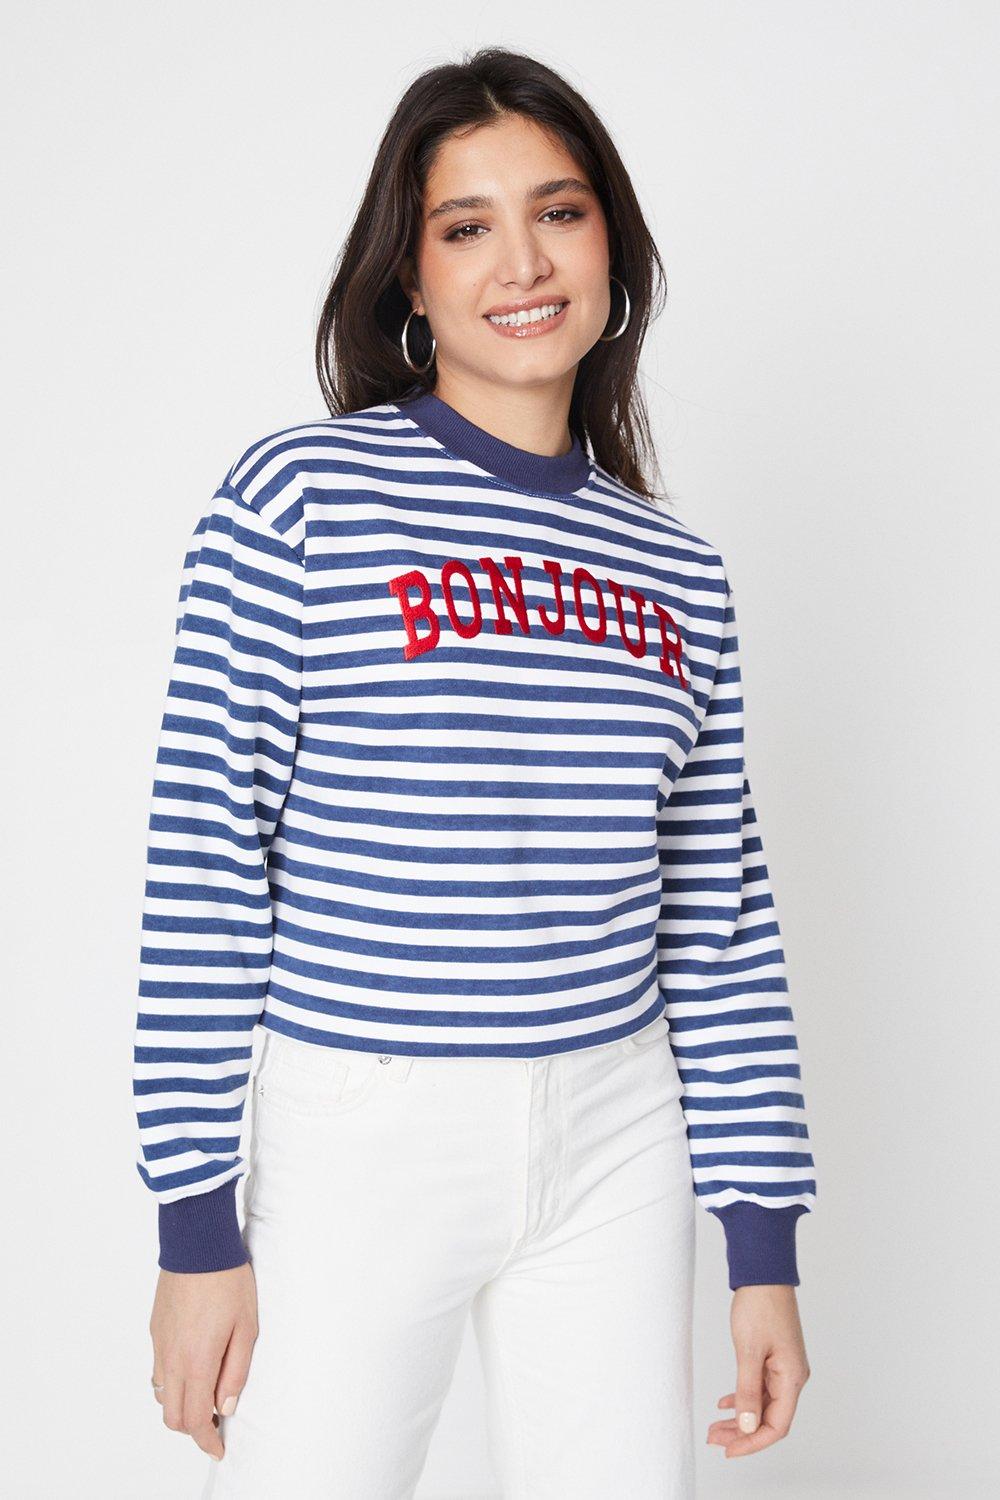 Women’s Stripe Slogan Sweatshirt - S